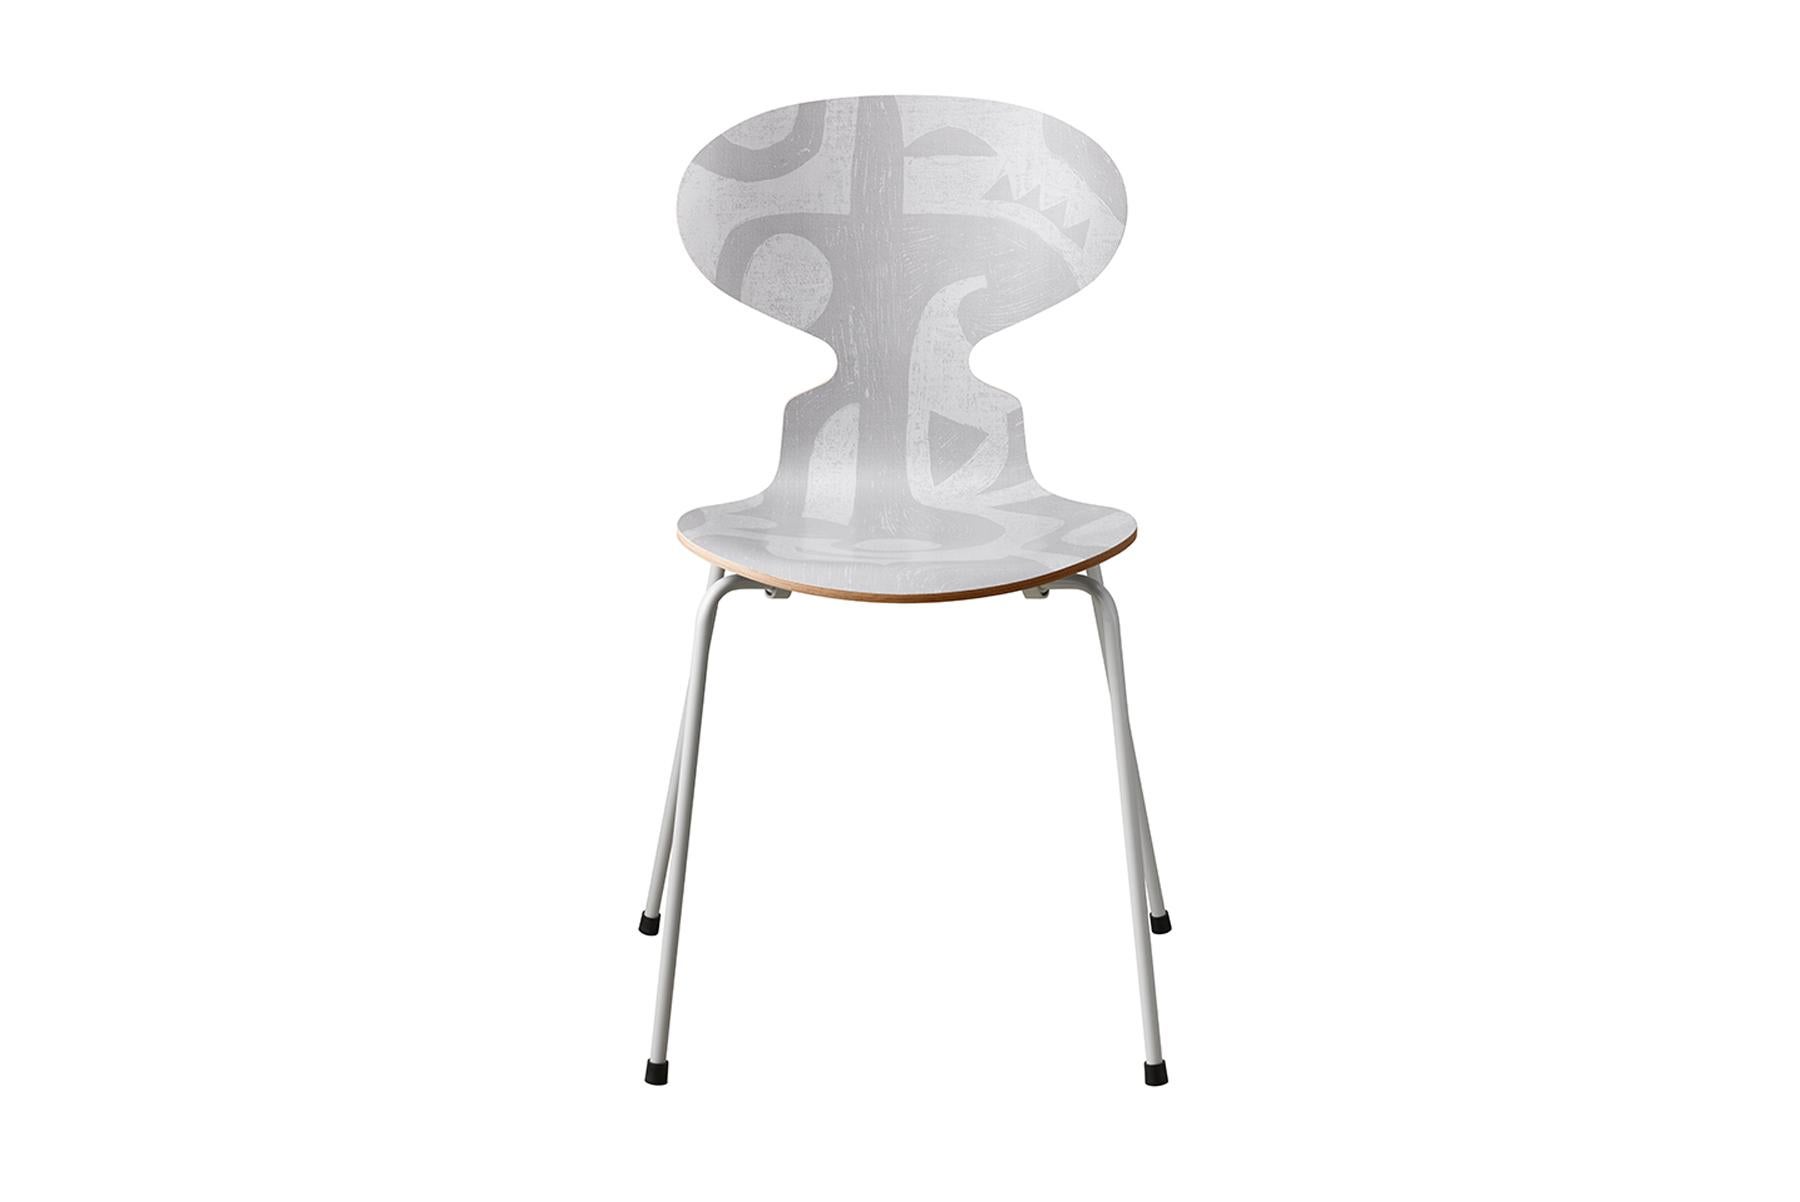 La chaise d'Arne Jacobsen doit son nom à la silhouette d'une fourmi à la tête levée. En dépit de sa forme élancée, Ant est solide et célèbre pour son confort. La silhouette Ant Deco est la première version imprimée de la chaise jamais publiée et